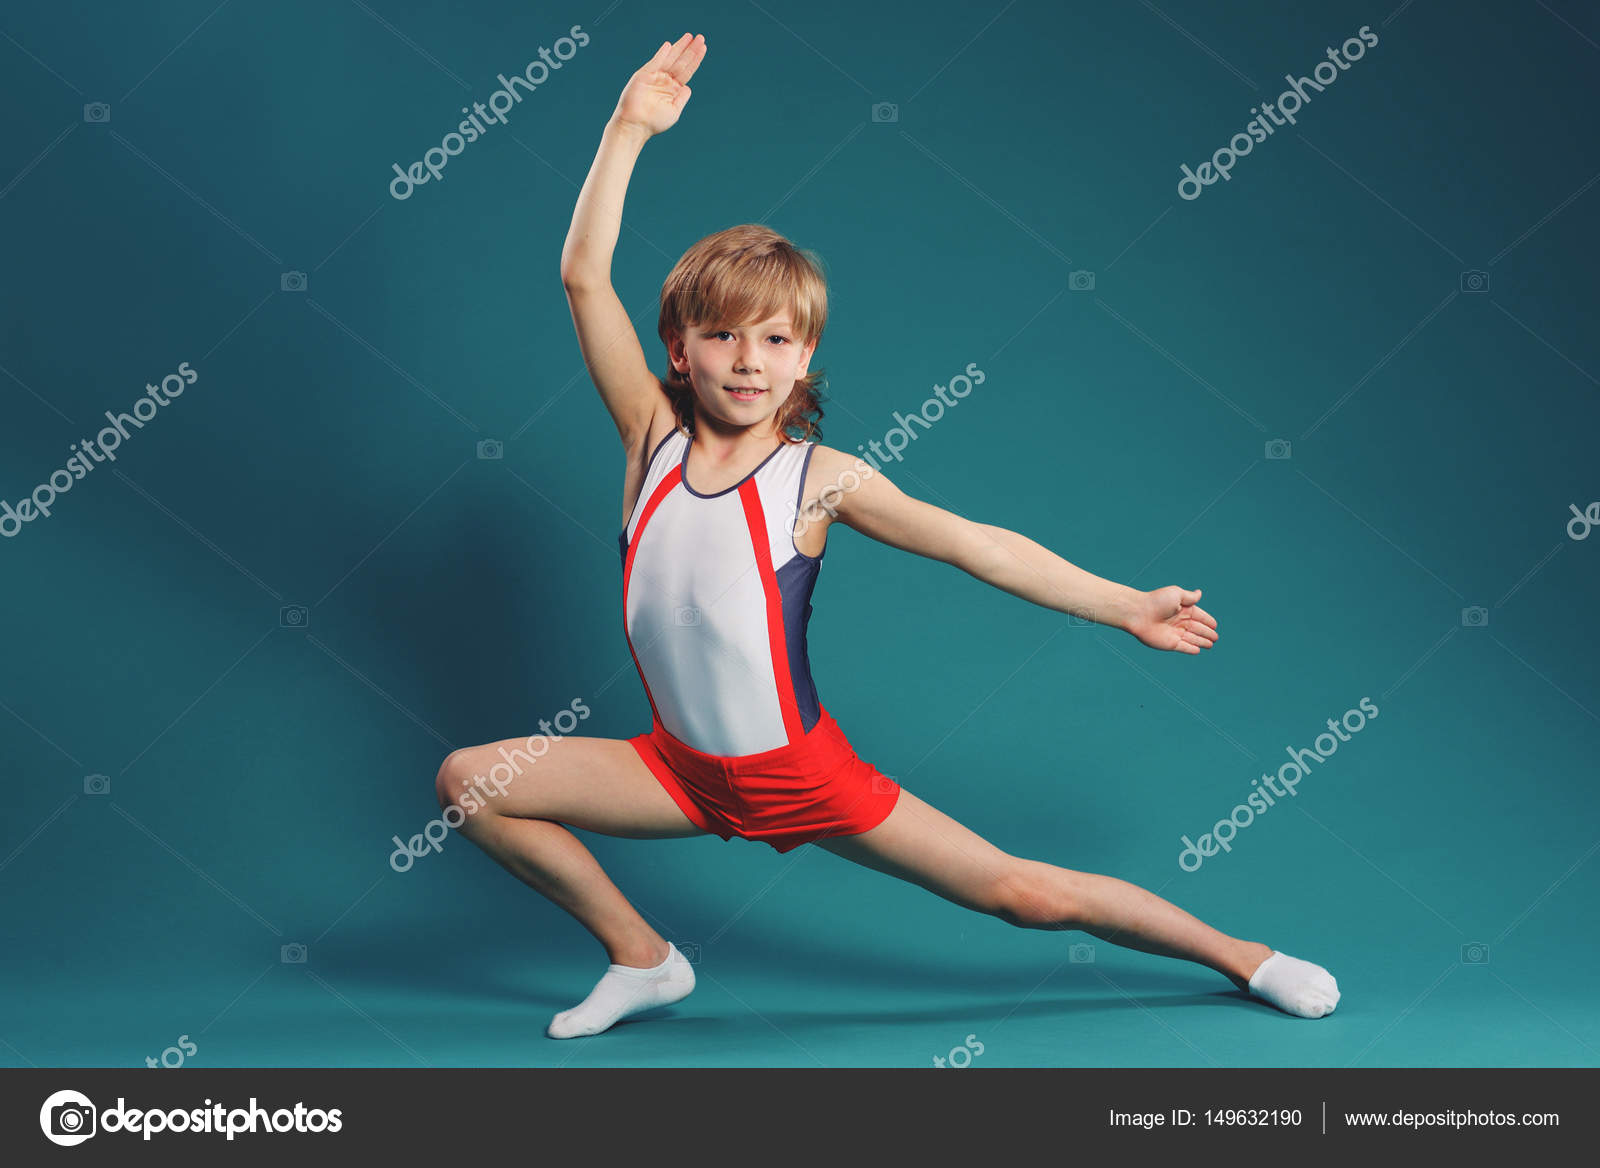 Boy gymnast.